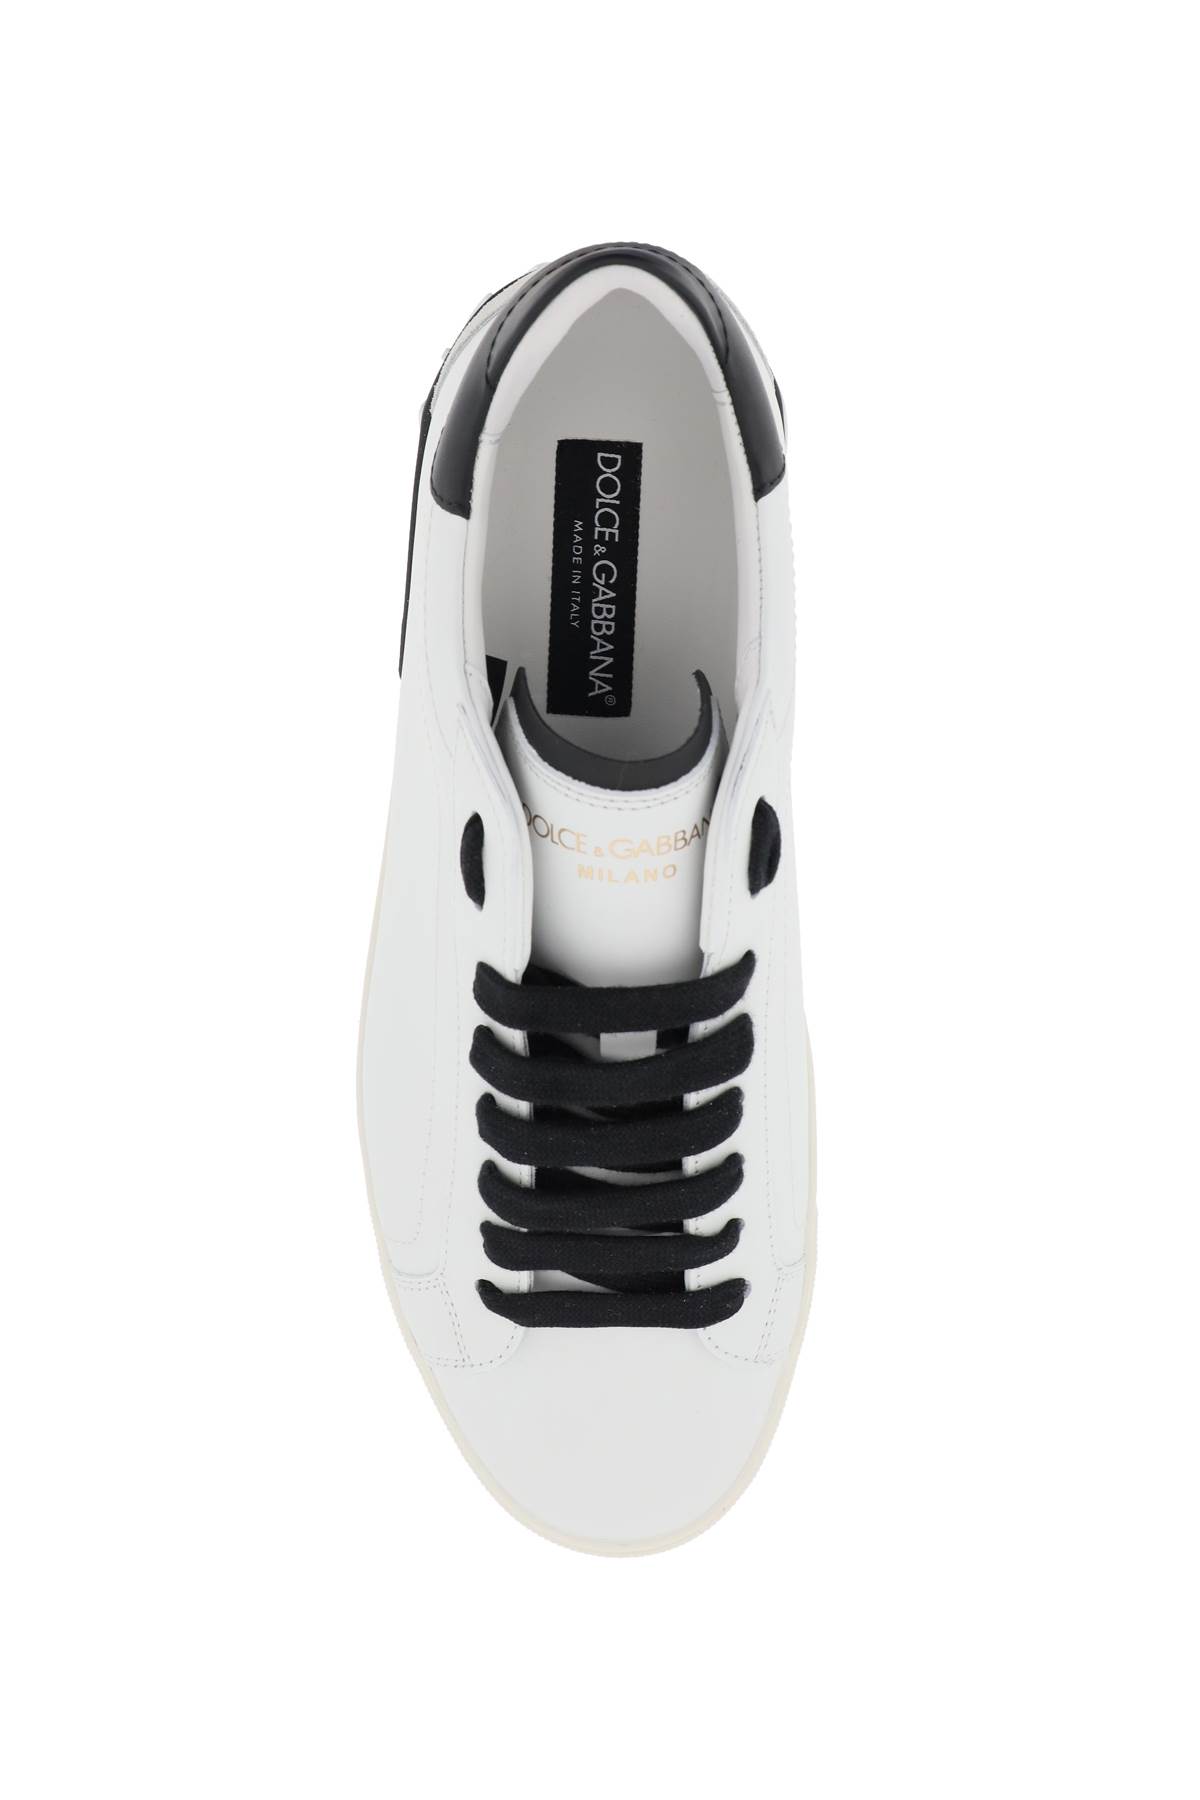 Shop Dolce & Gabbana Portofino Nappa Leather Sneakers In White/black